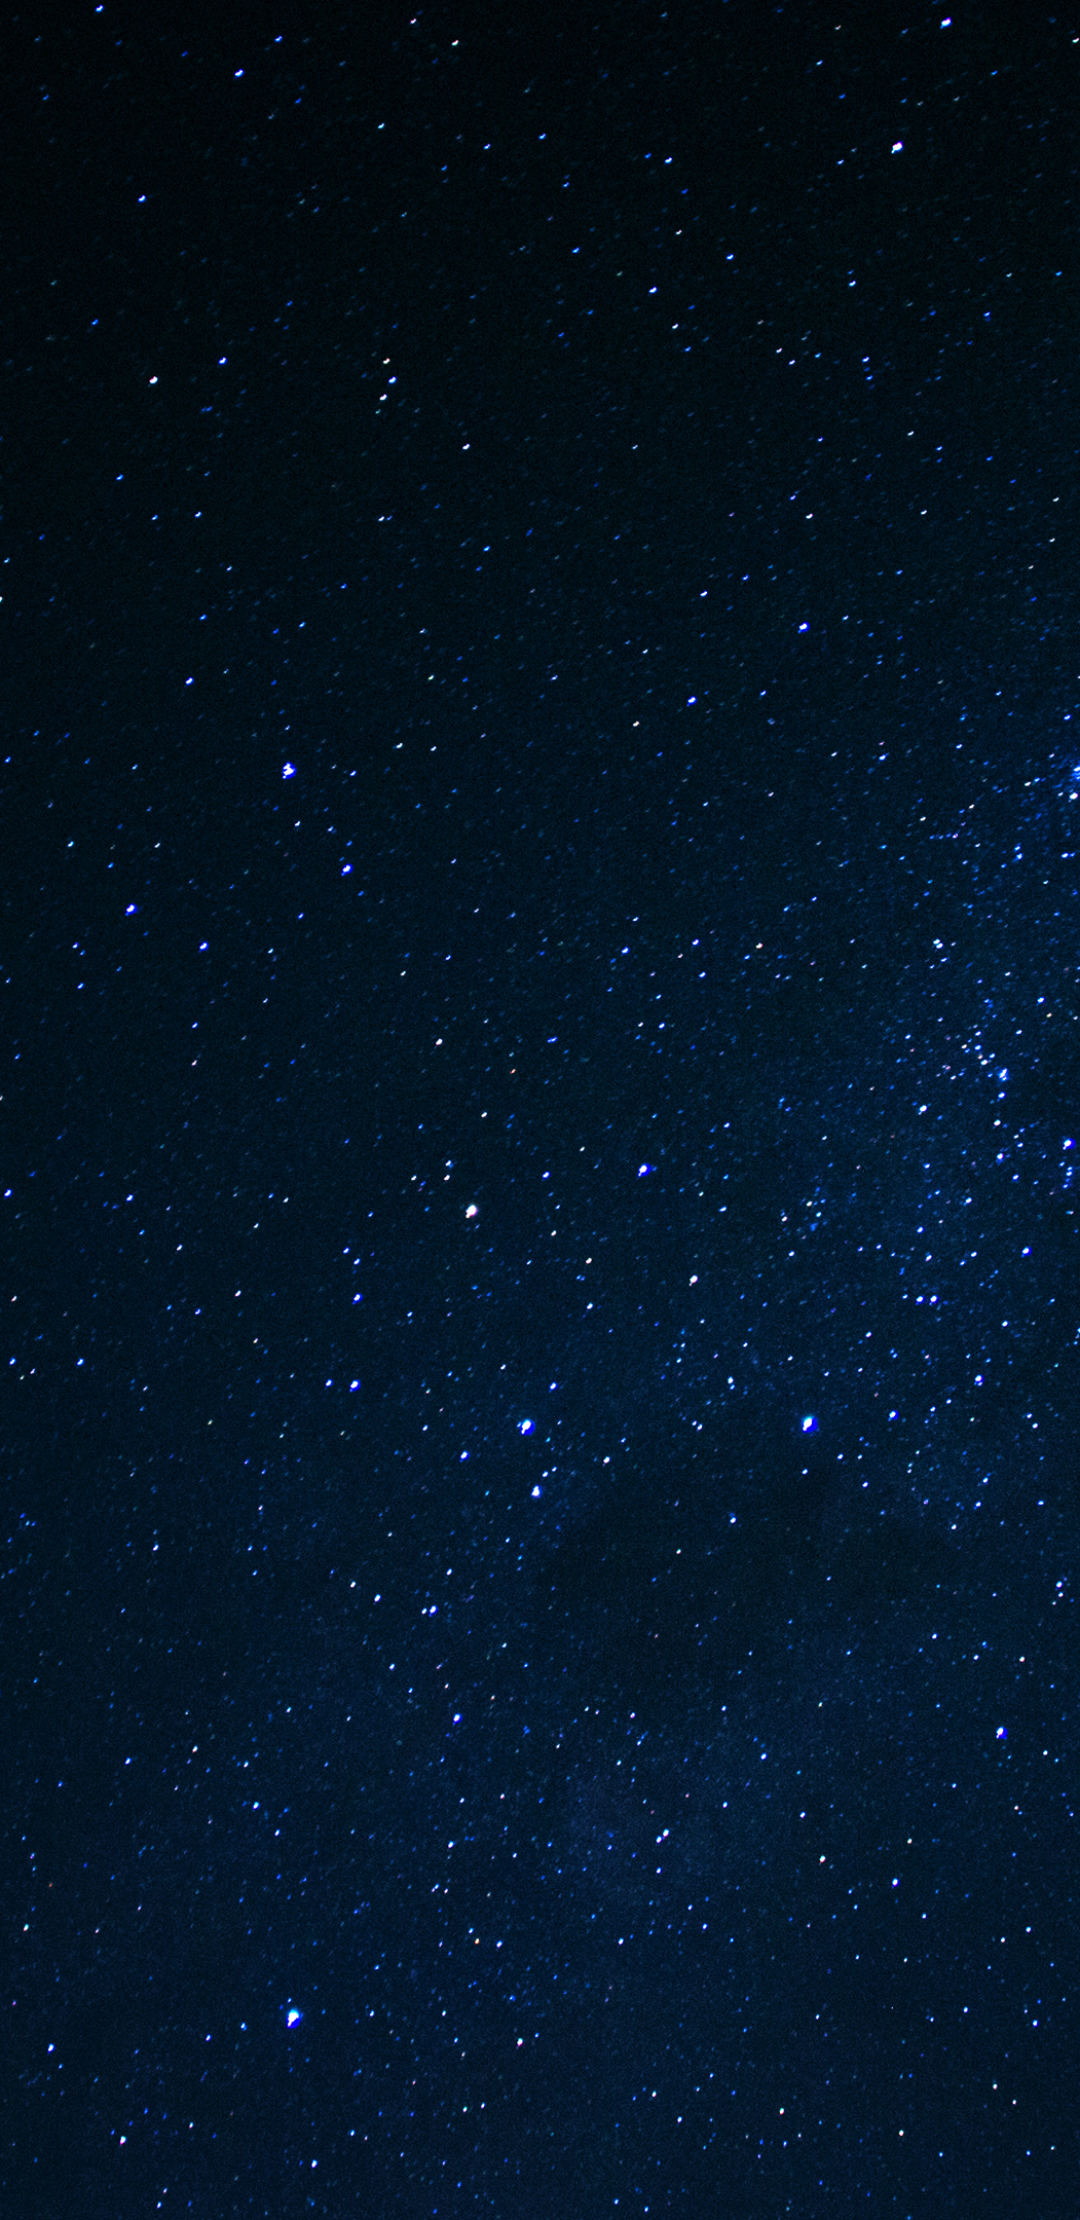 Descarga gratuita de fondo de pantalla para móvil de Estrellas, Espacio, Ciencia Ficción.